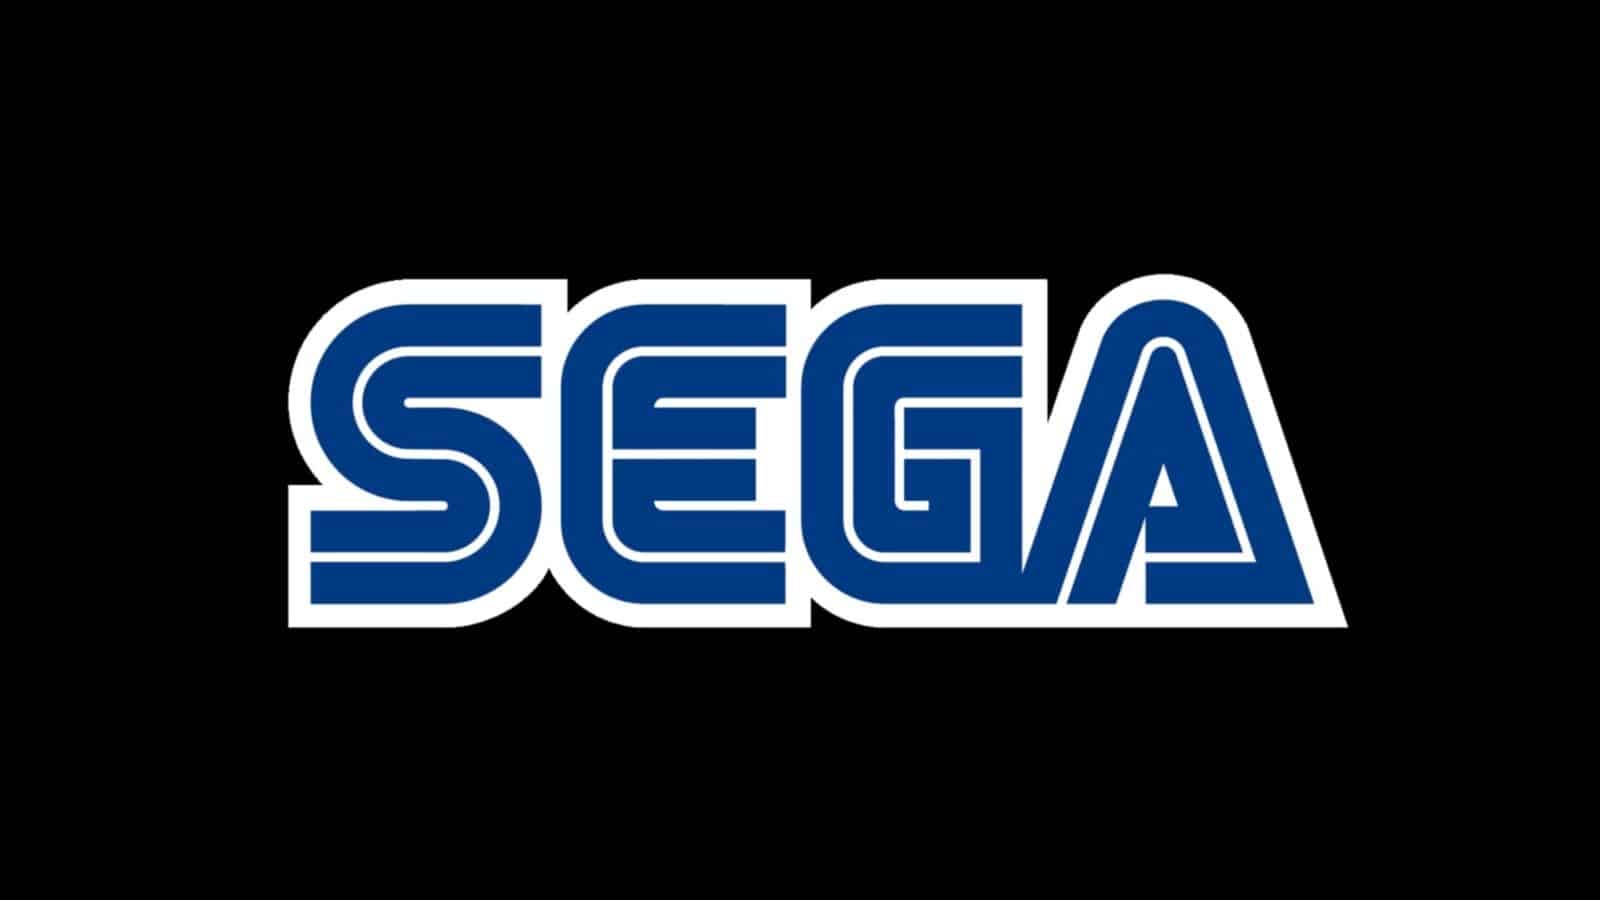 sega logo on black background header image